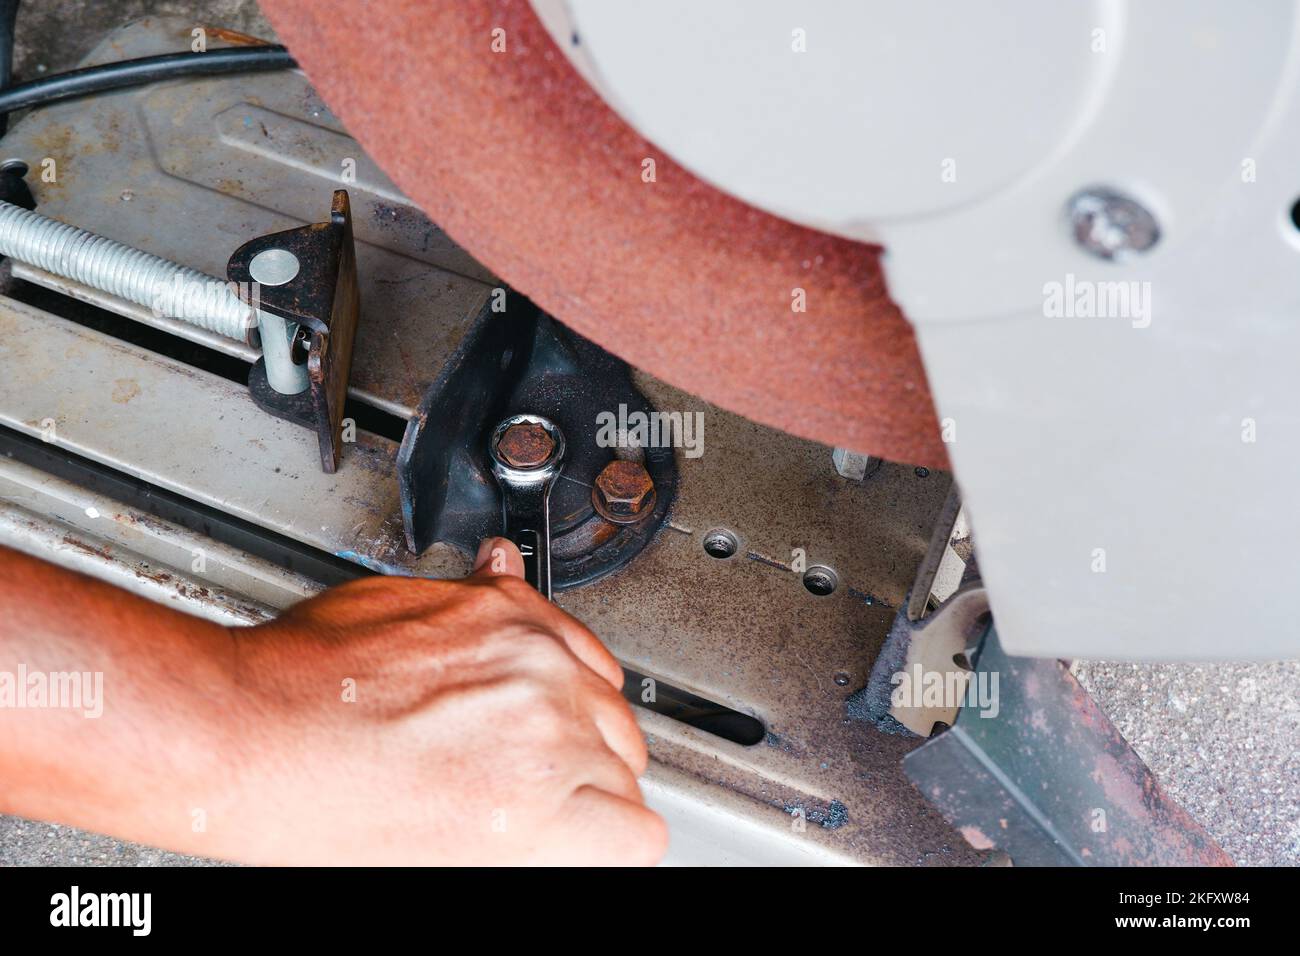 Der Techniker zieht die Mutter an, um den Schnittwinkel der abgeschnittenen Säge mit einem Gabelschlüssel einzustellen Stockfoto